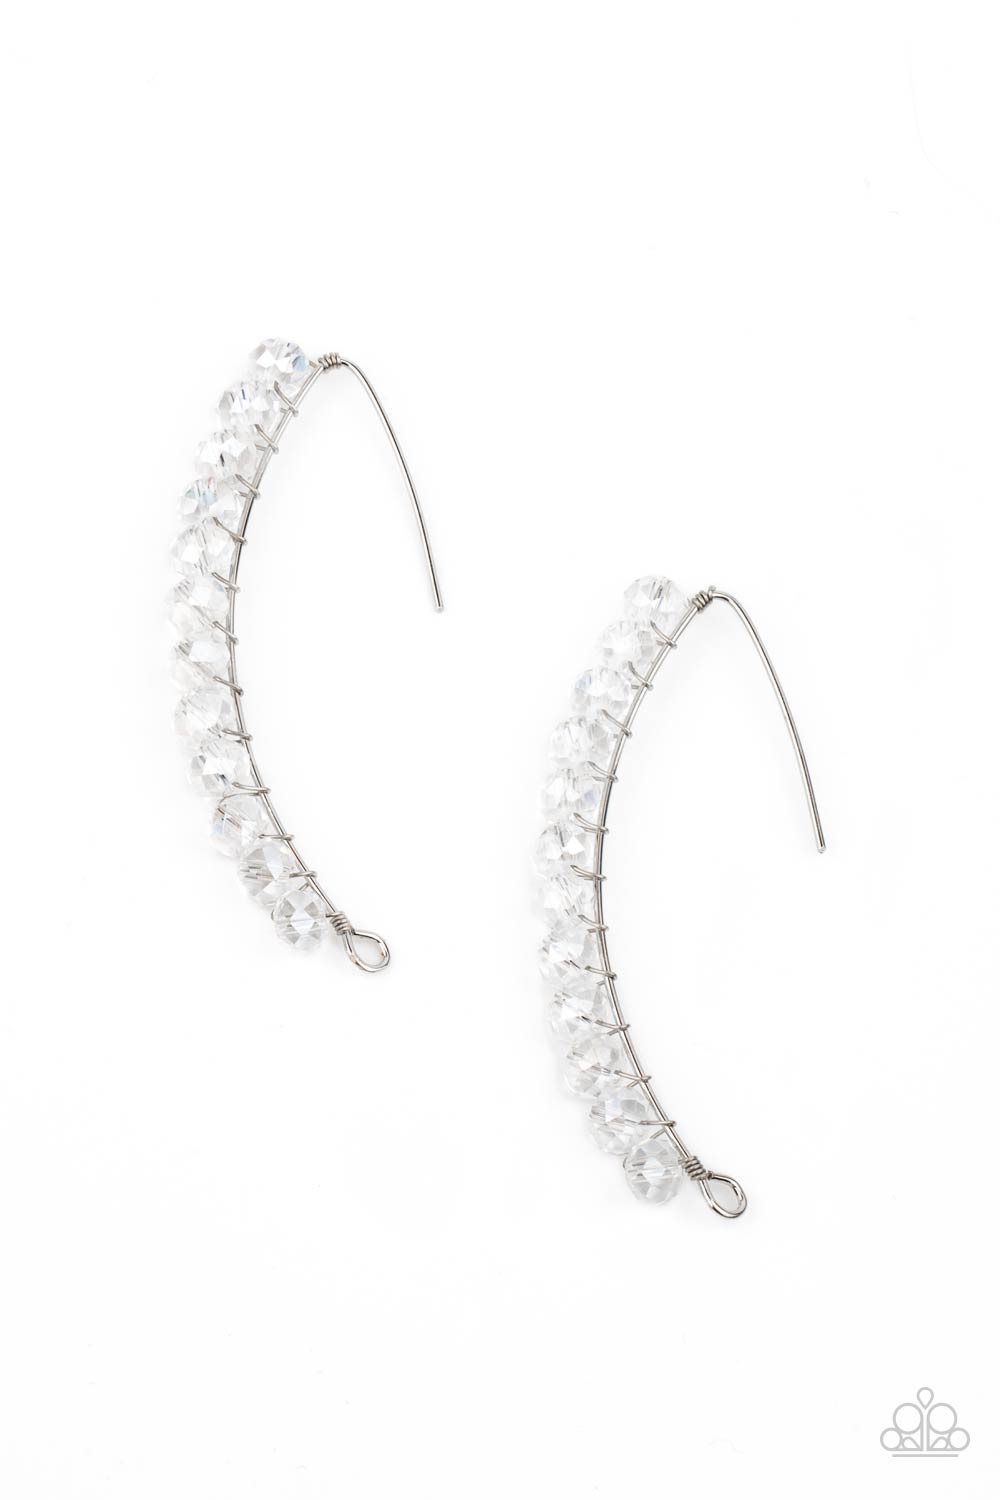 GLOW Hanging Fruit - white - Paparazzi earrings